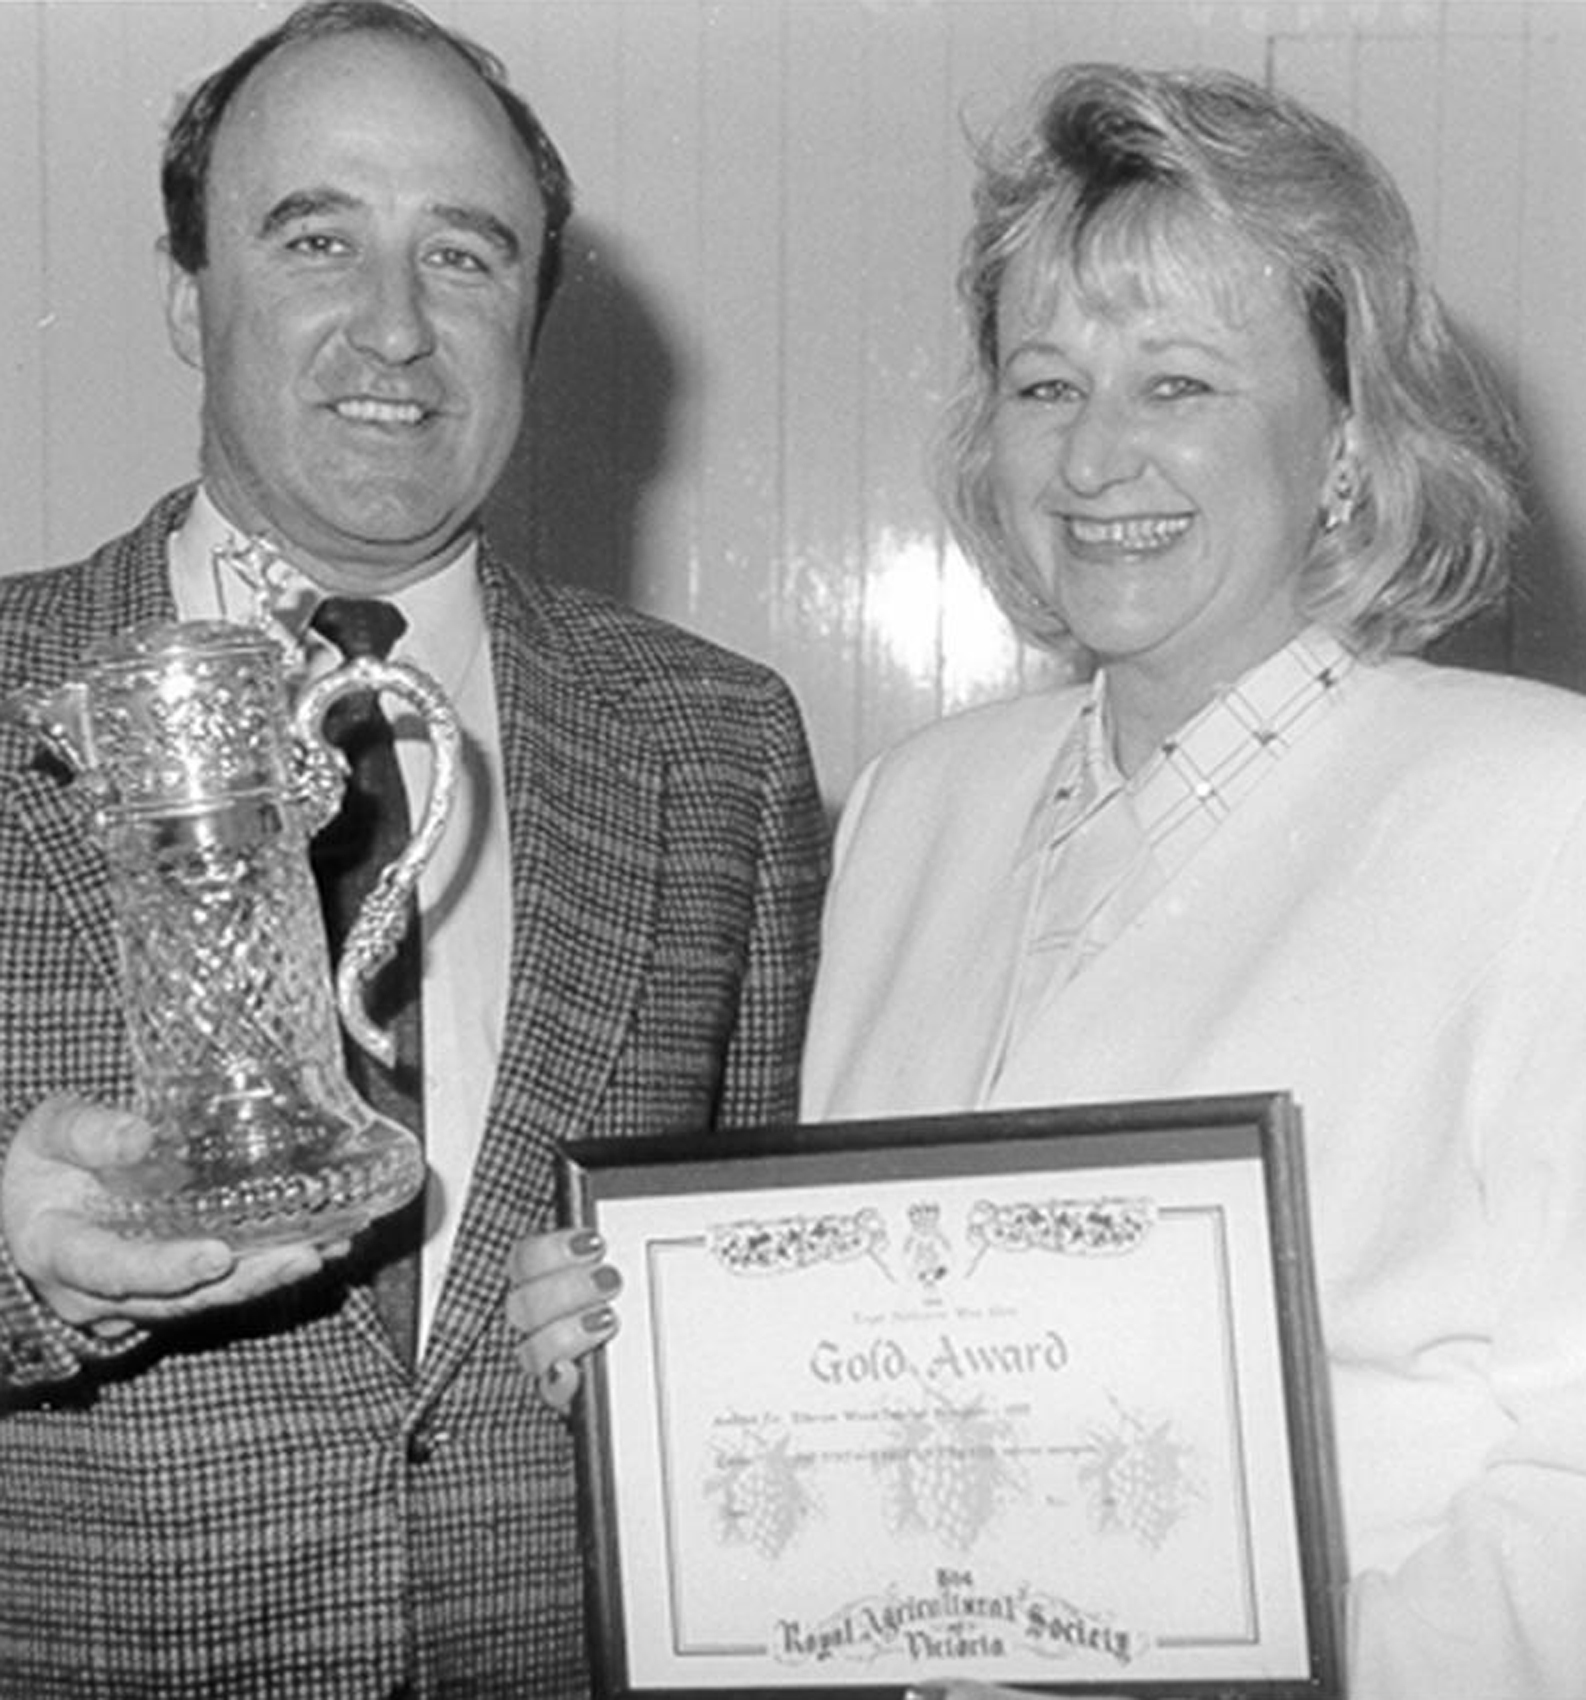 Neil & Lorraine Ashmead with Jimmy Watson trophy, 1993